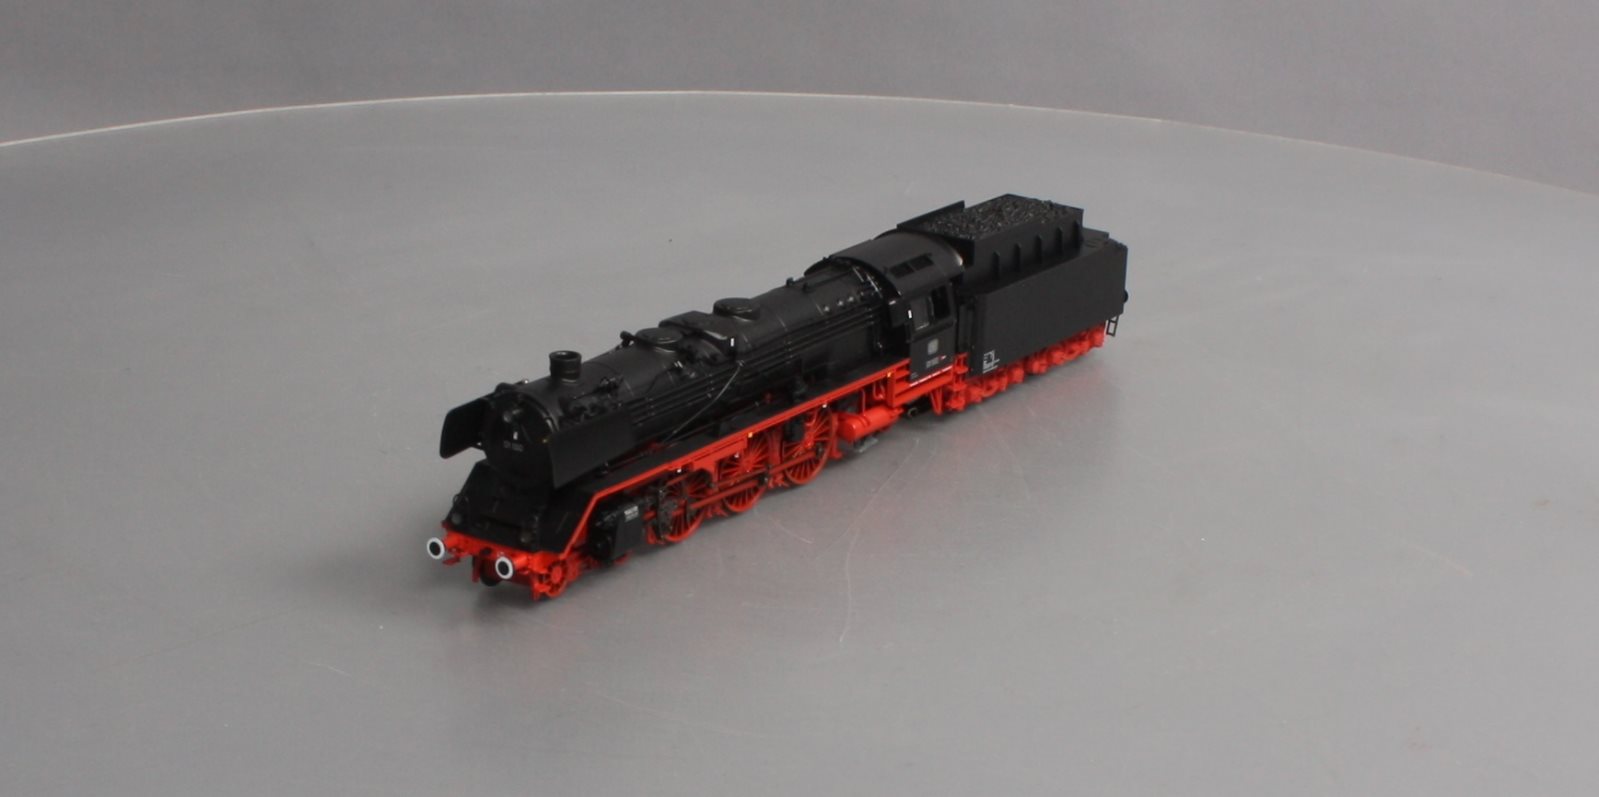 人気セールmarklin メルクリン 39013 DB Steam Locomotive BR 01 150 鉄道模型 HOゲージ 中古 美品 K6400841 外国車輌